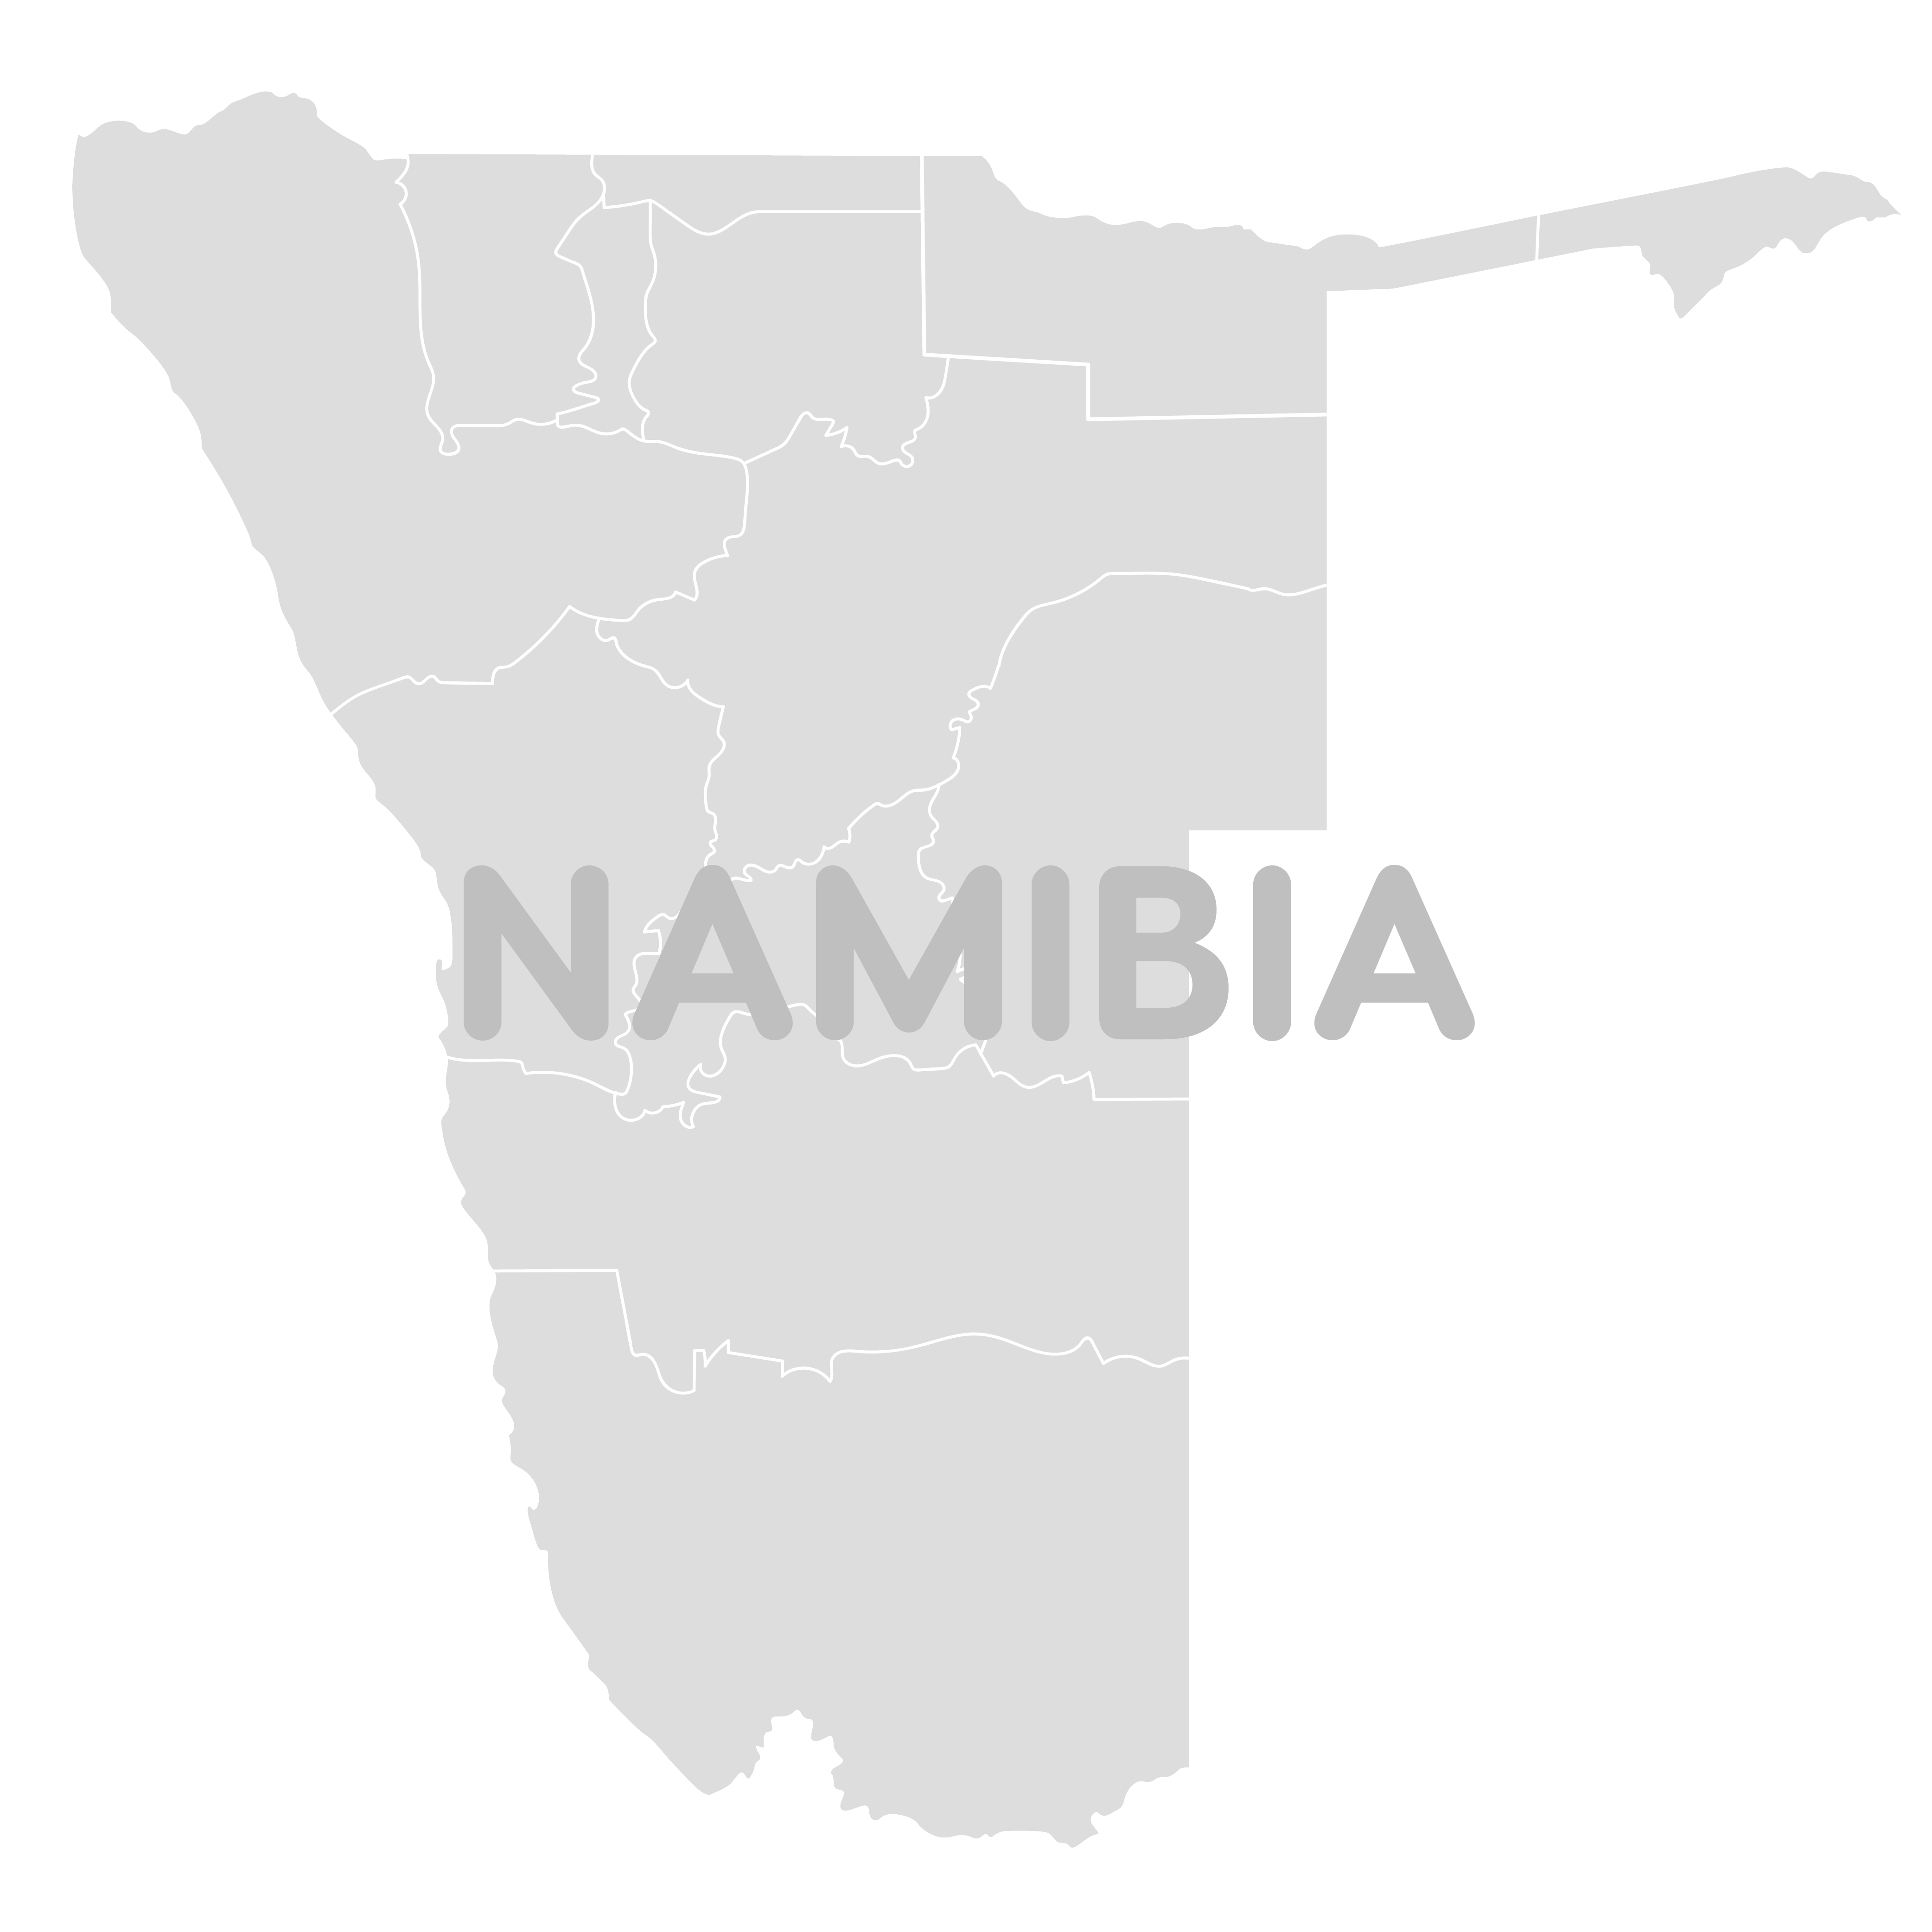 Namibia Map TourSA